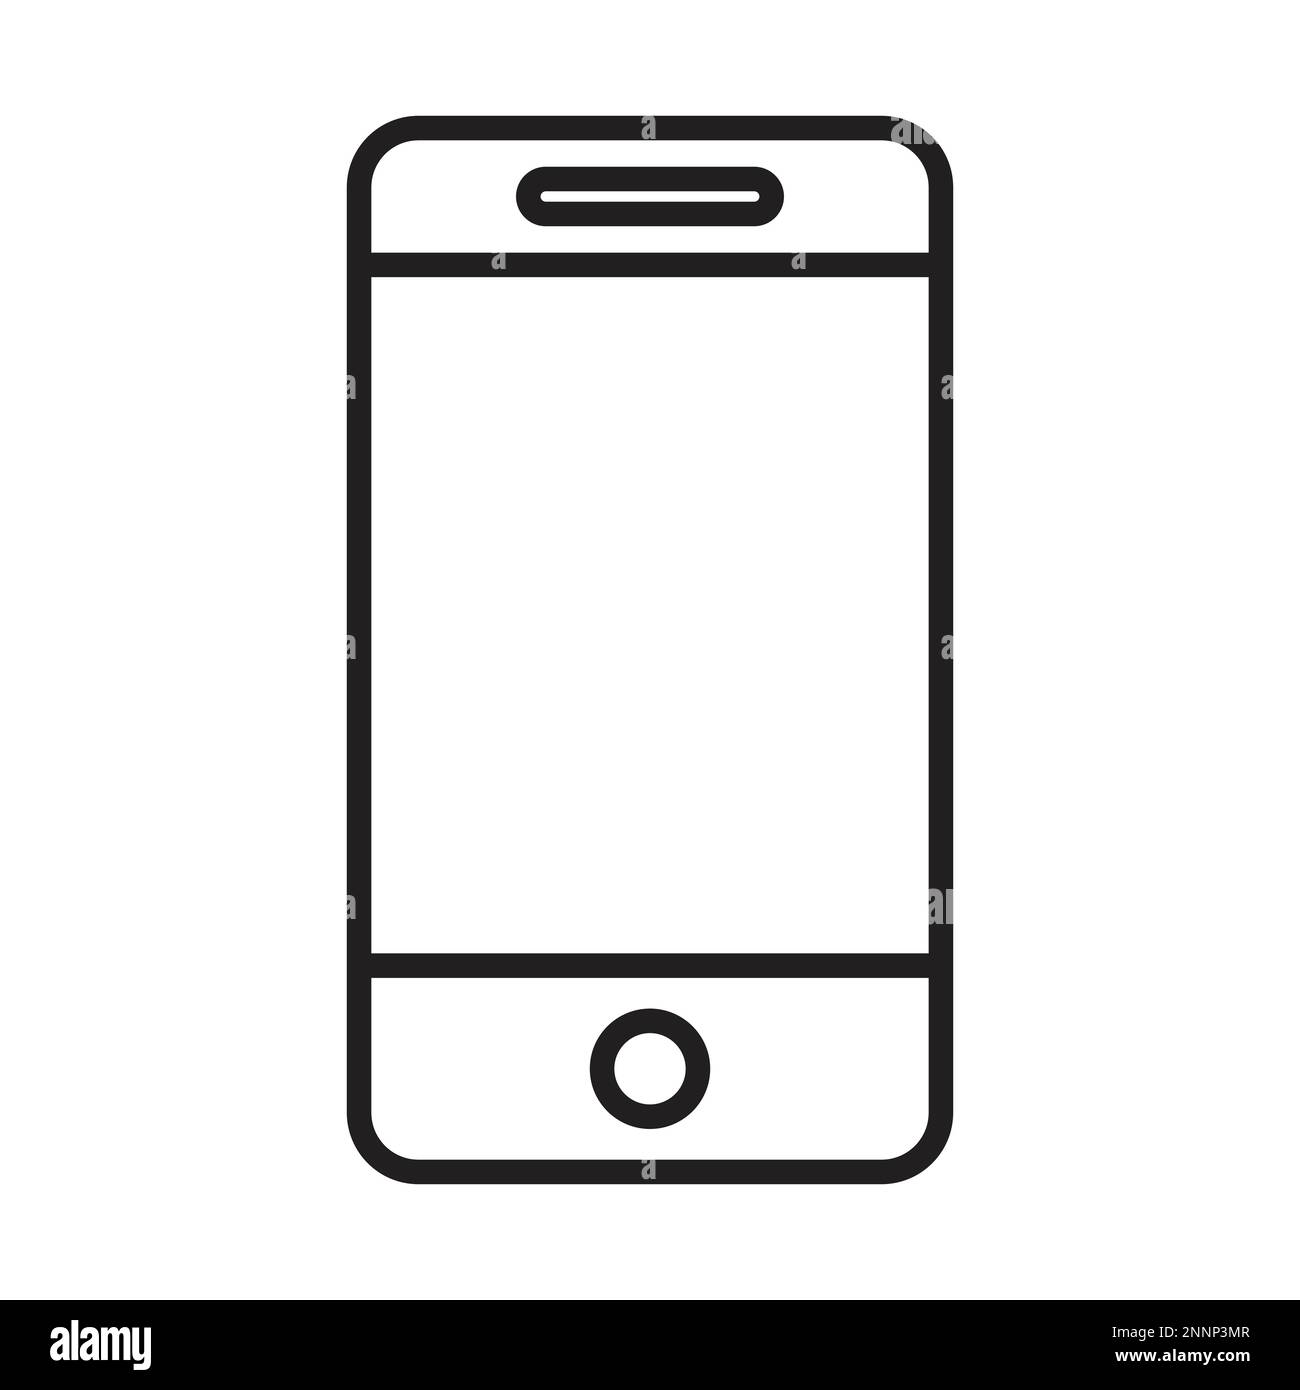 Icona linea smartphone nera, icona telefono cellulare vettoriale contorno, touch screen linea telefonica, icona smartphone trendy vettoriale eps 10 Illustrazione Vettoriale